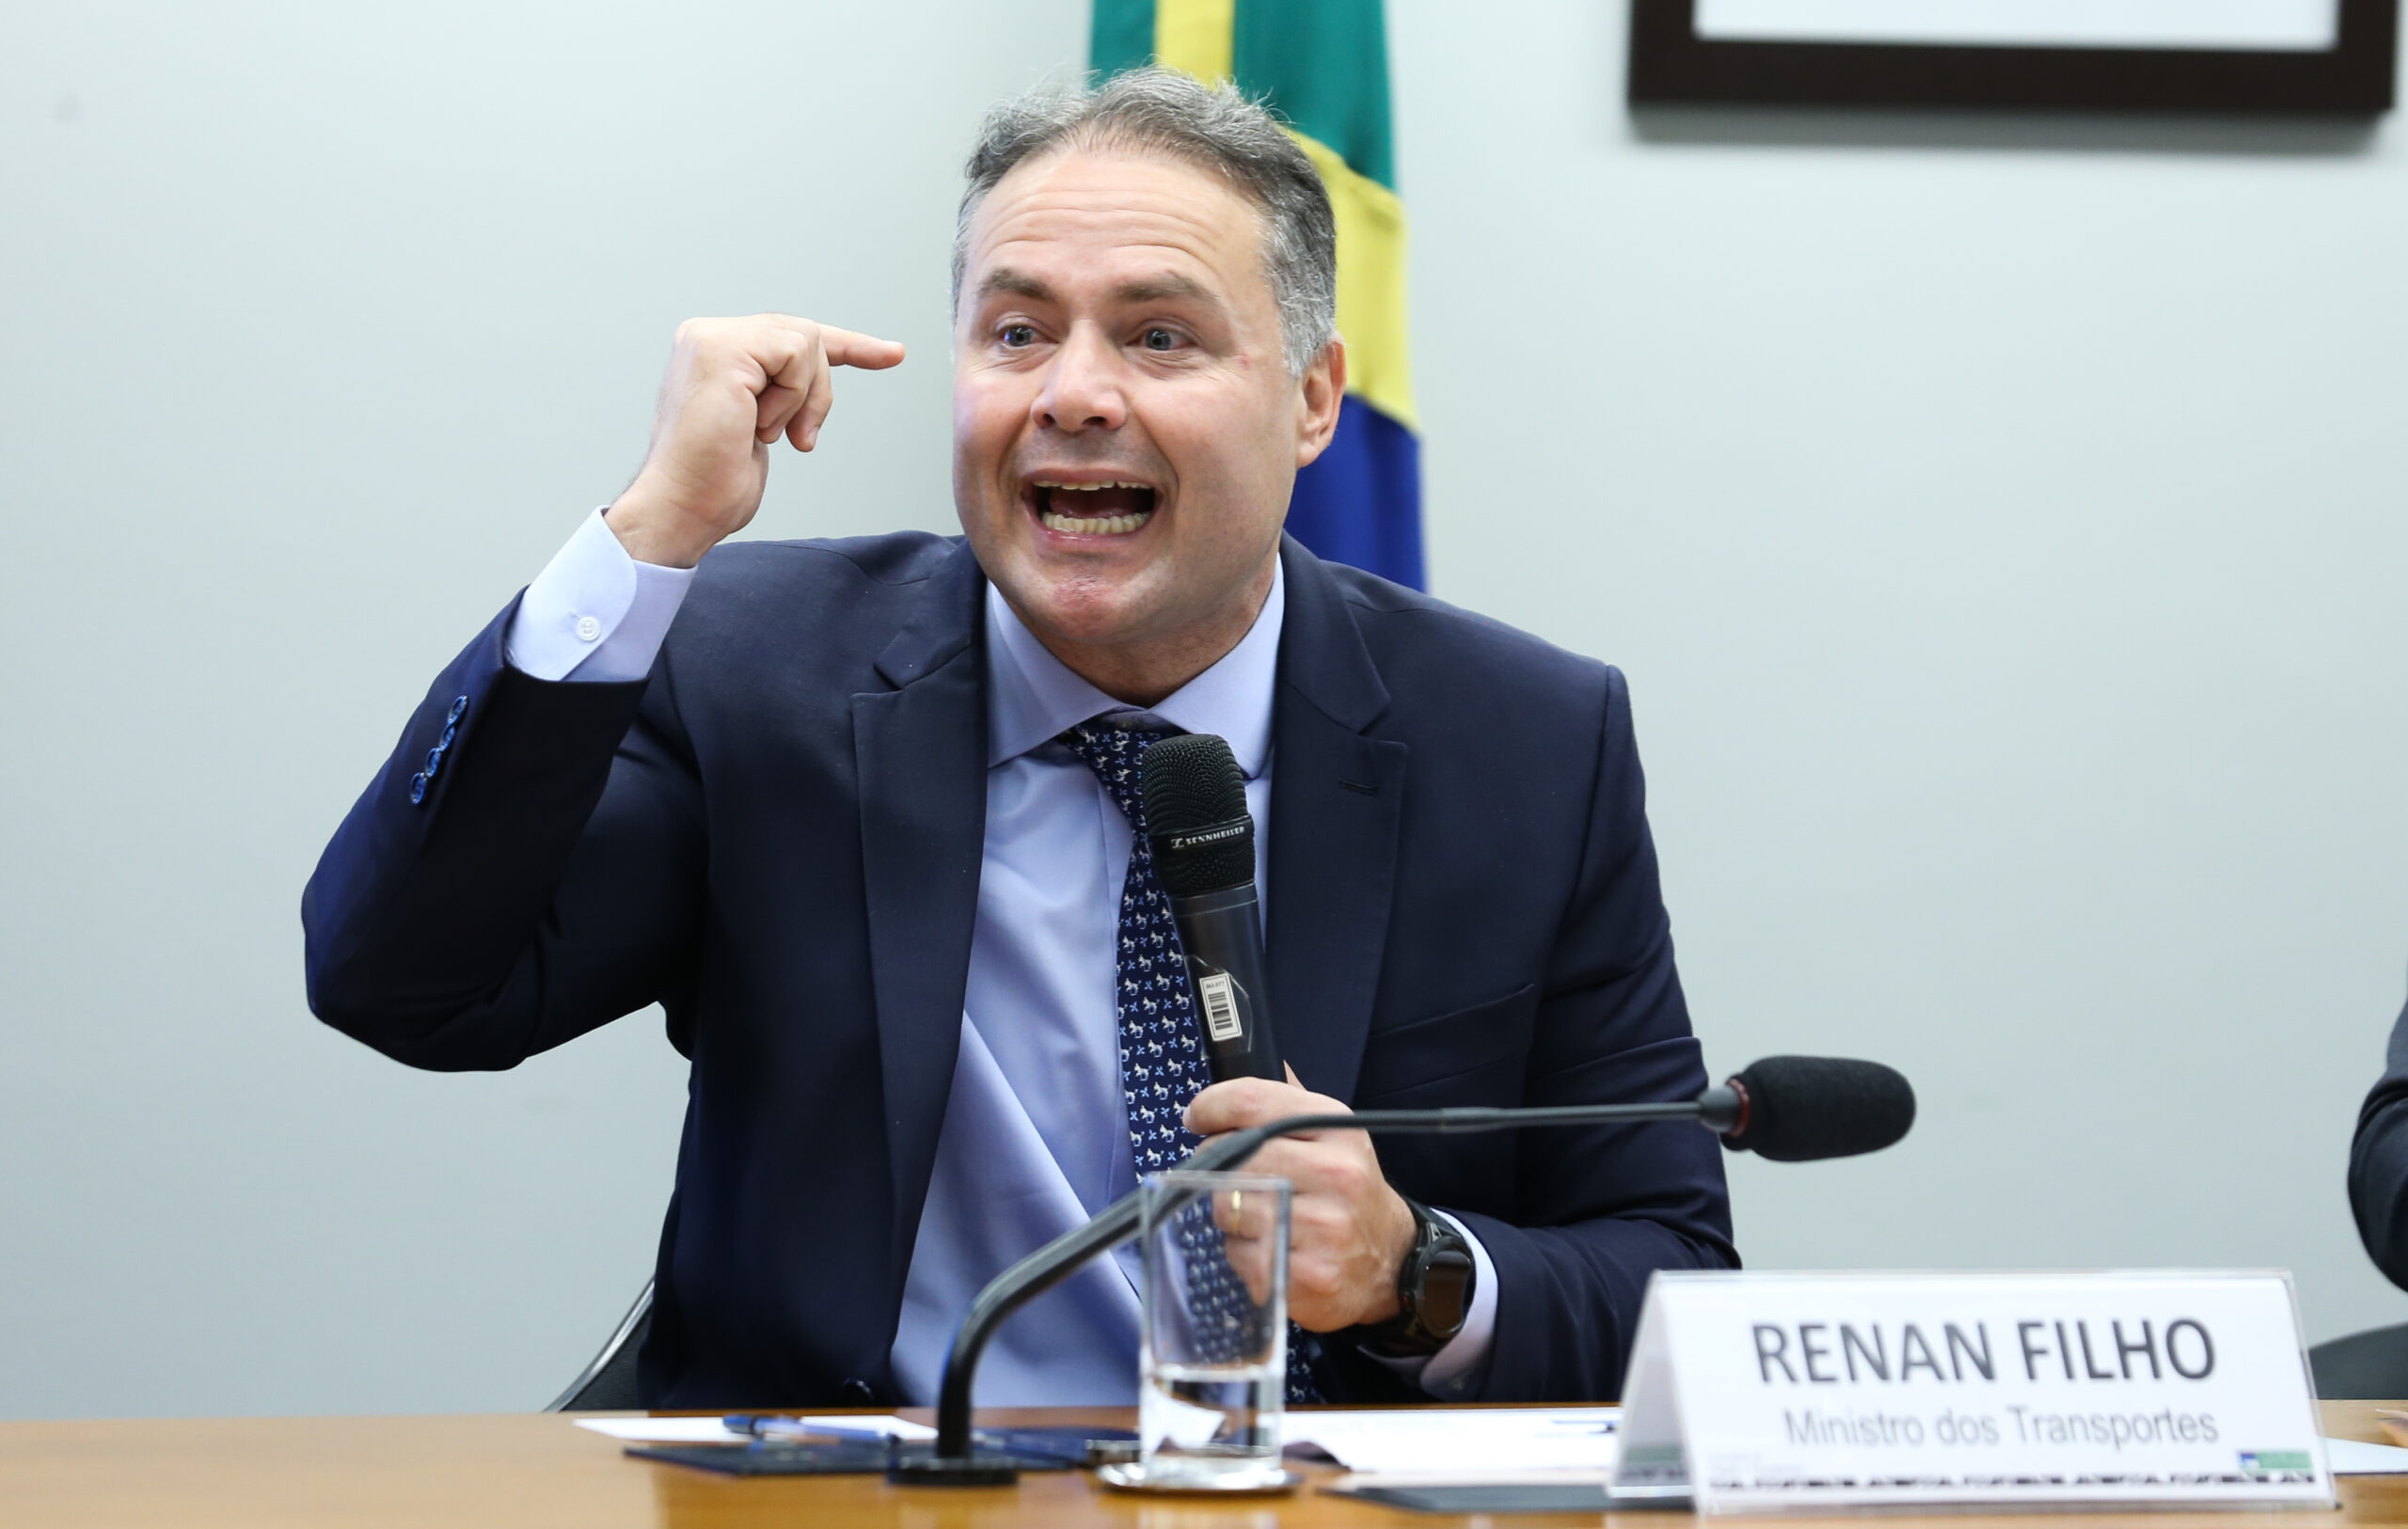 Renan Filho recebe R$ 4,2 milhões em indenização da Braskem